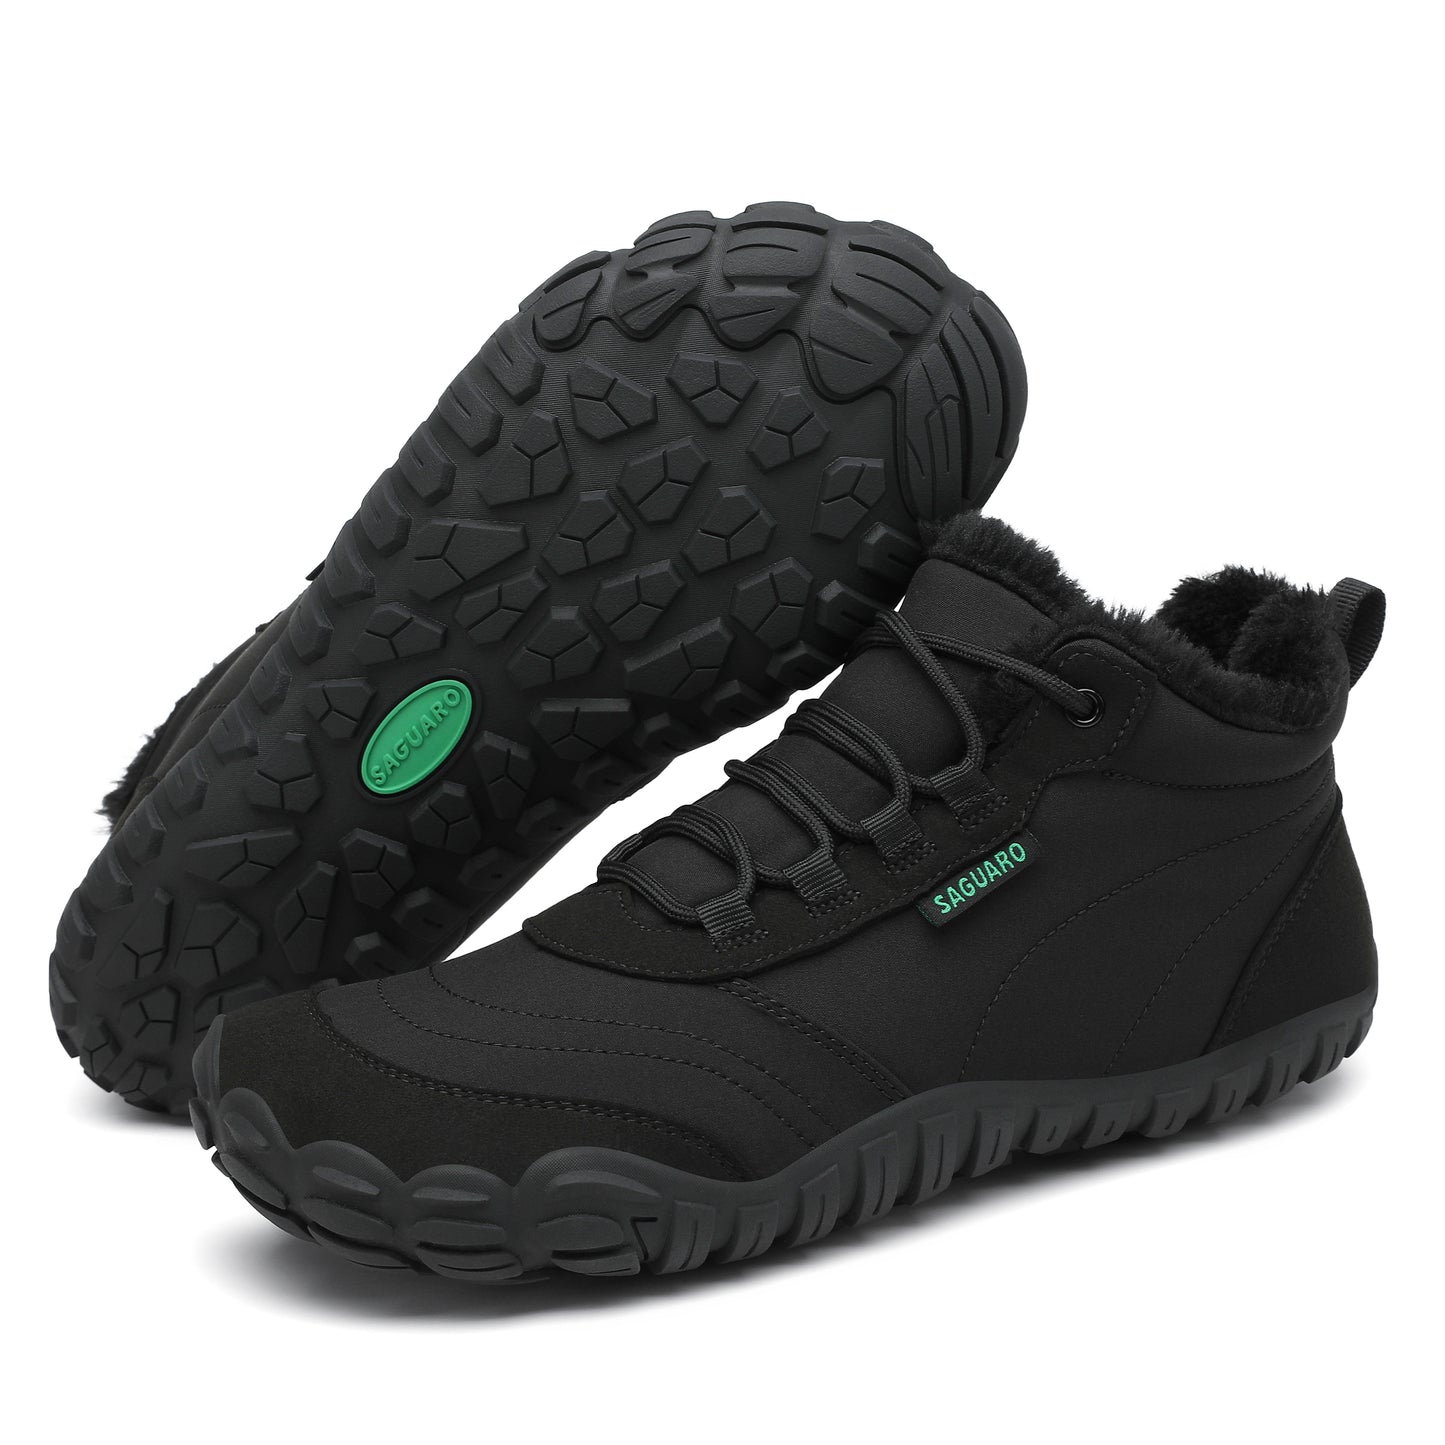 Botas Will II - Negro - Barefootshoes